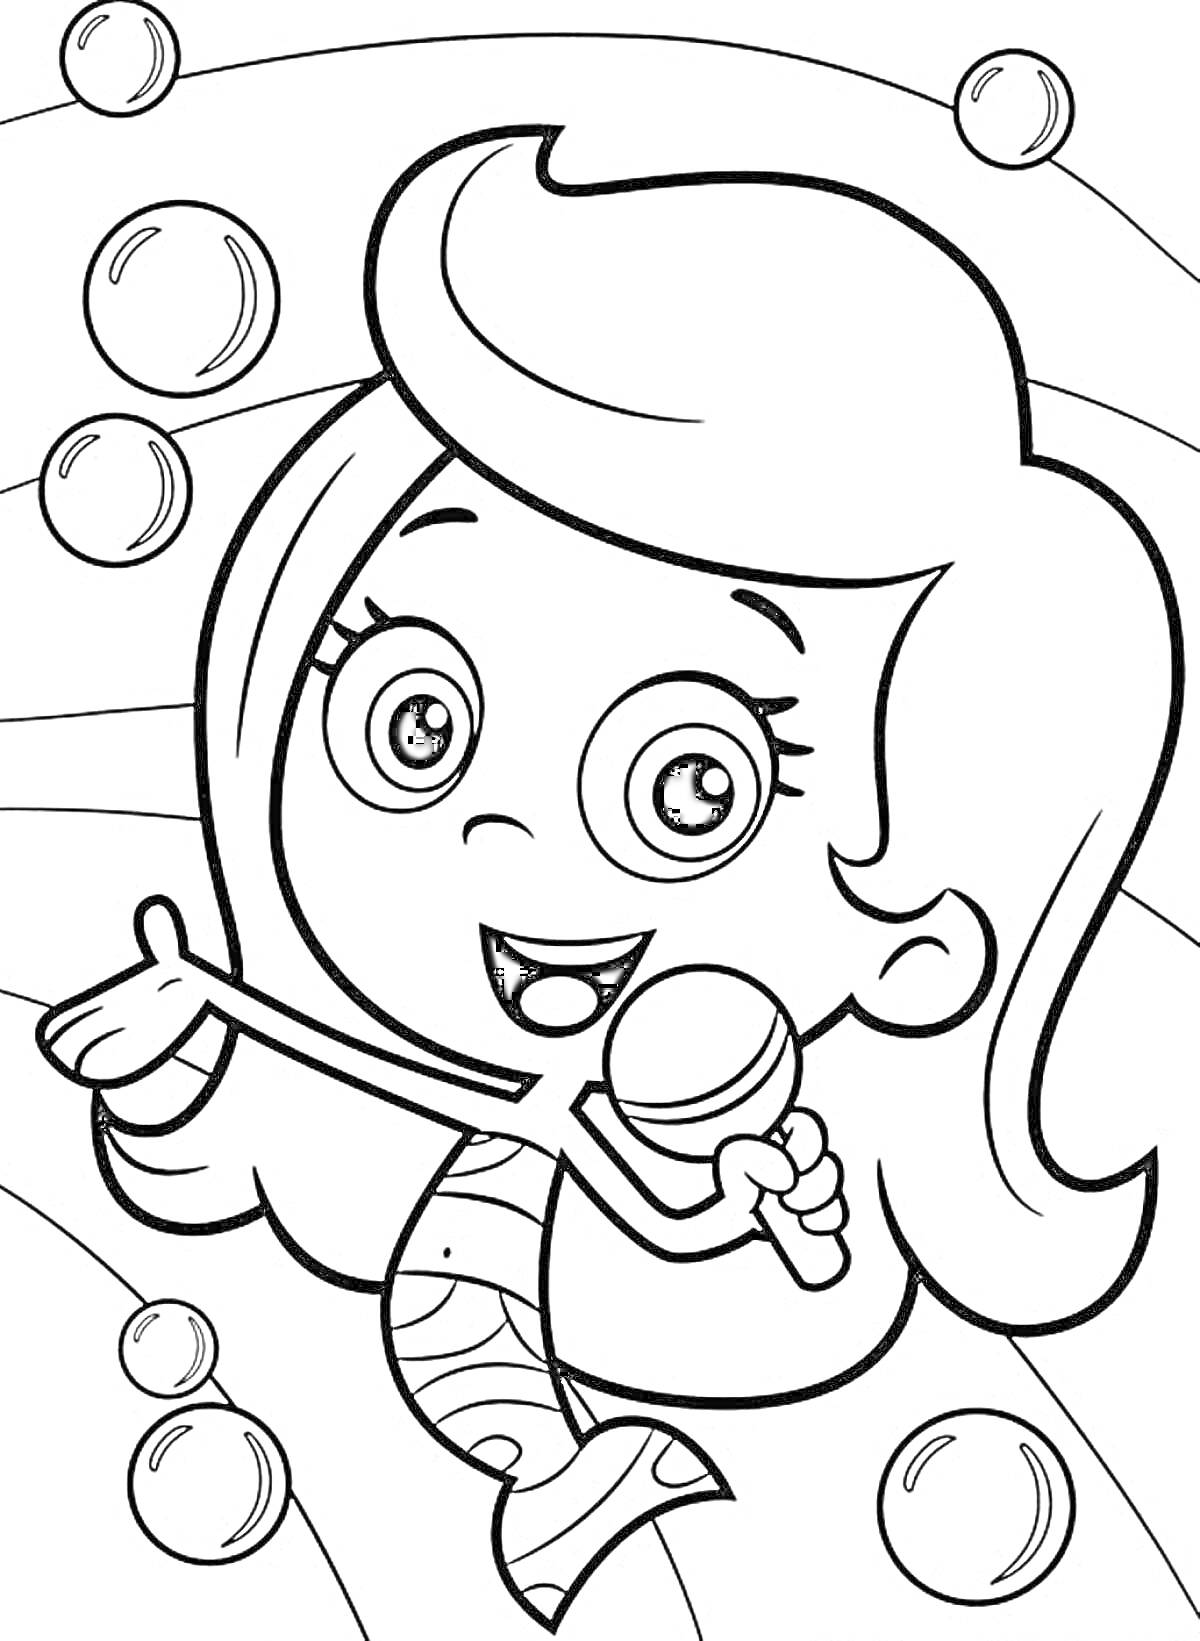 Девочка-русалка с микрофоном и пузырьками